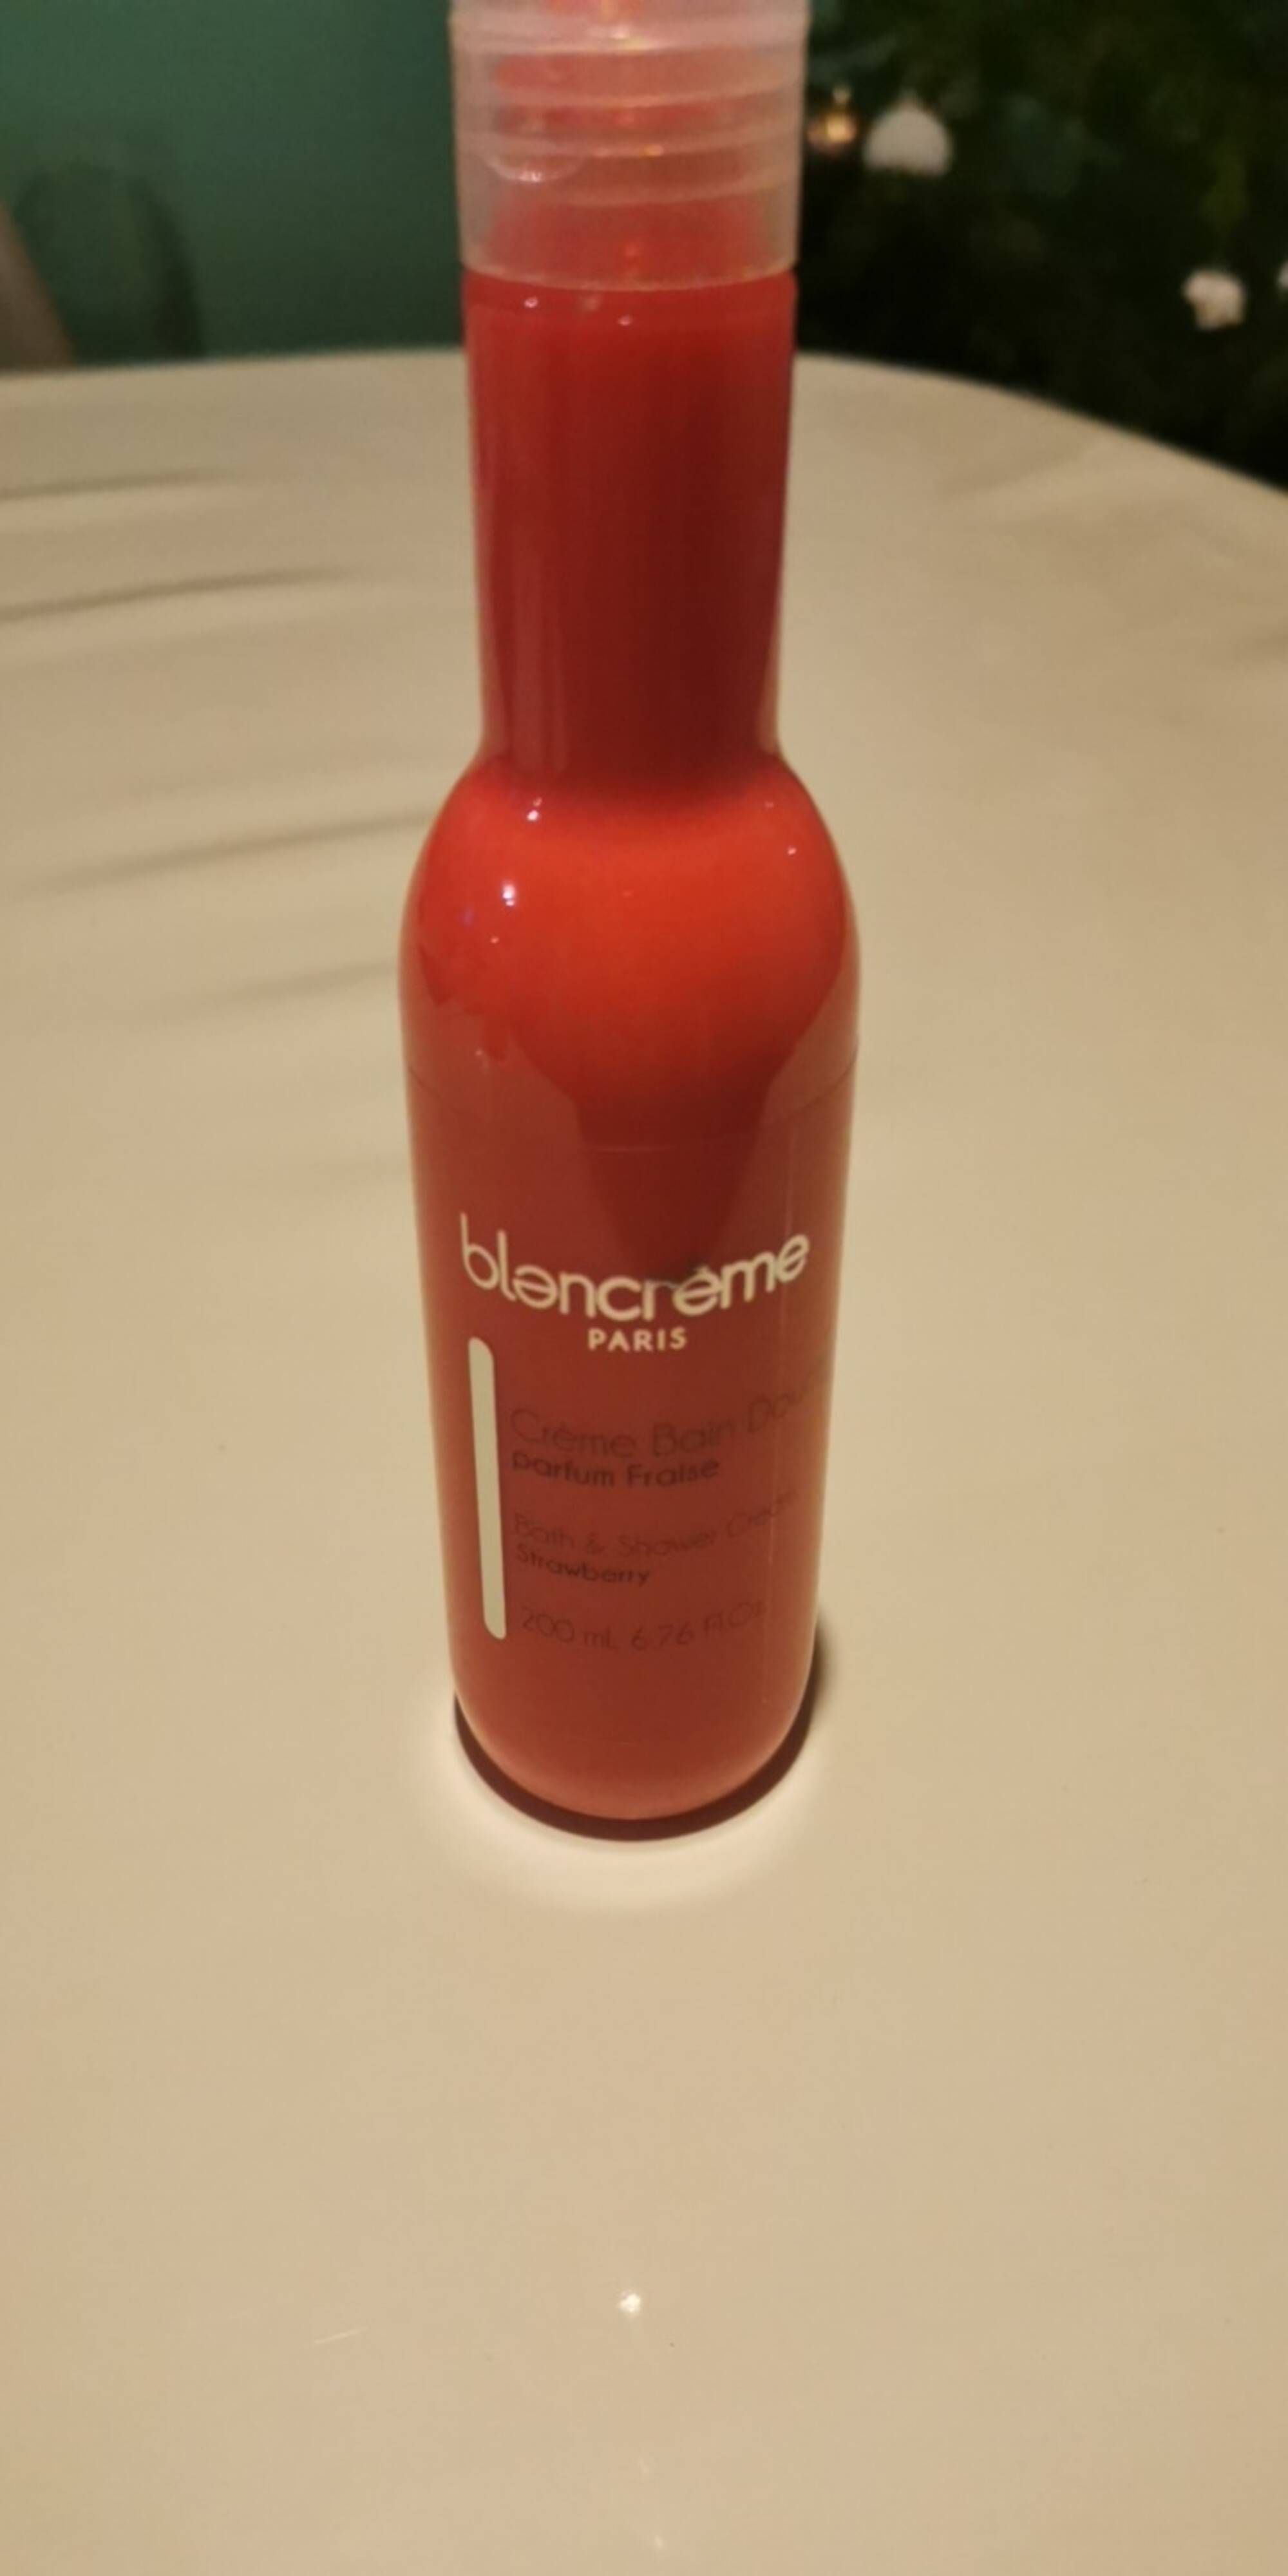 BLANCRÈME - Crème bain douche parfum fraise